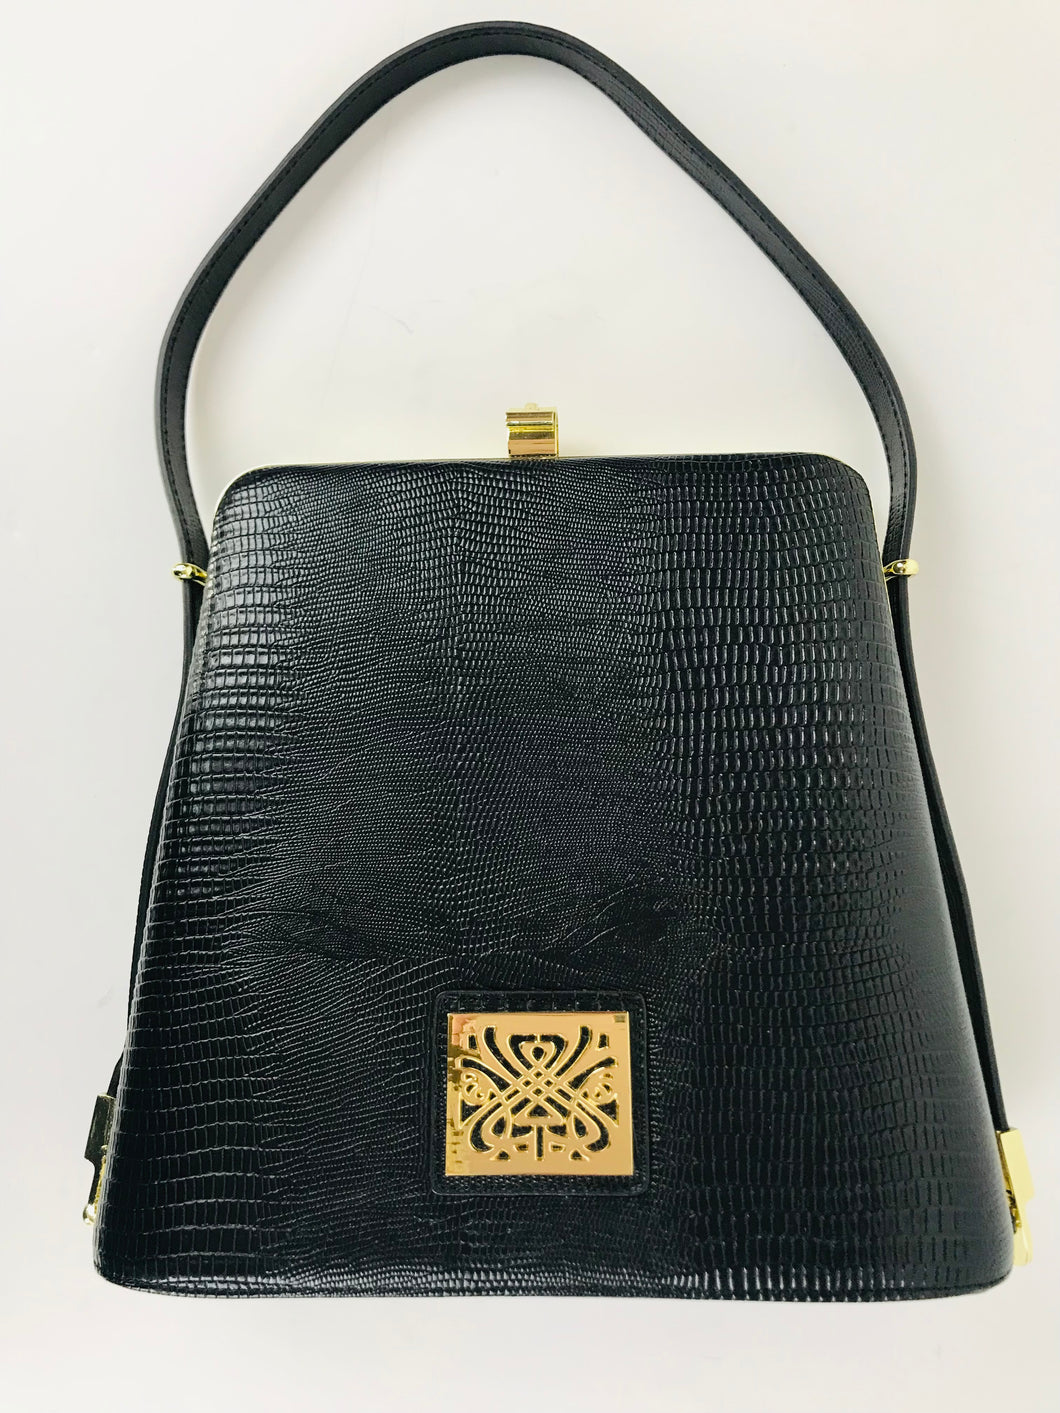 Biba Women's Faux Leather Croc Shoulder Bag | Medium | Black